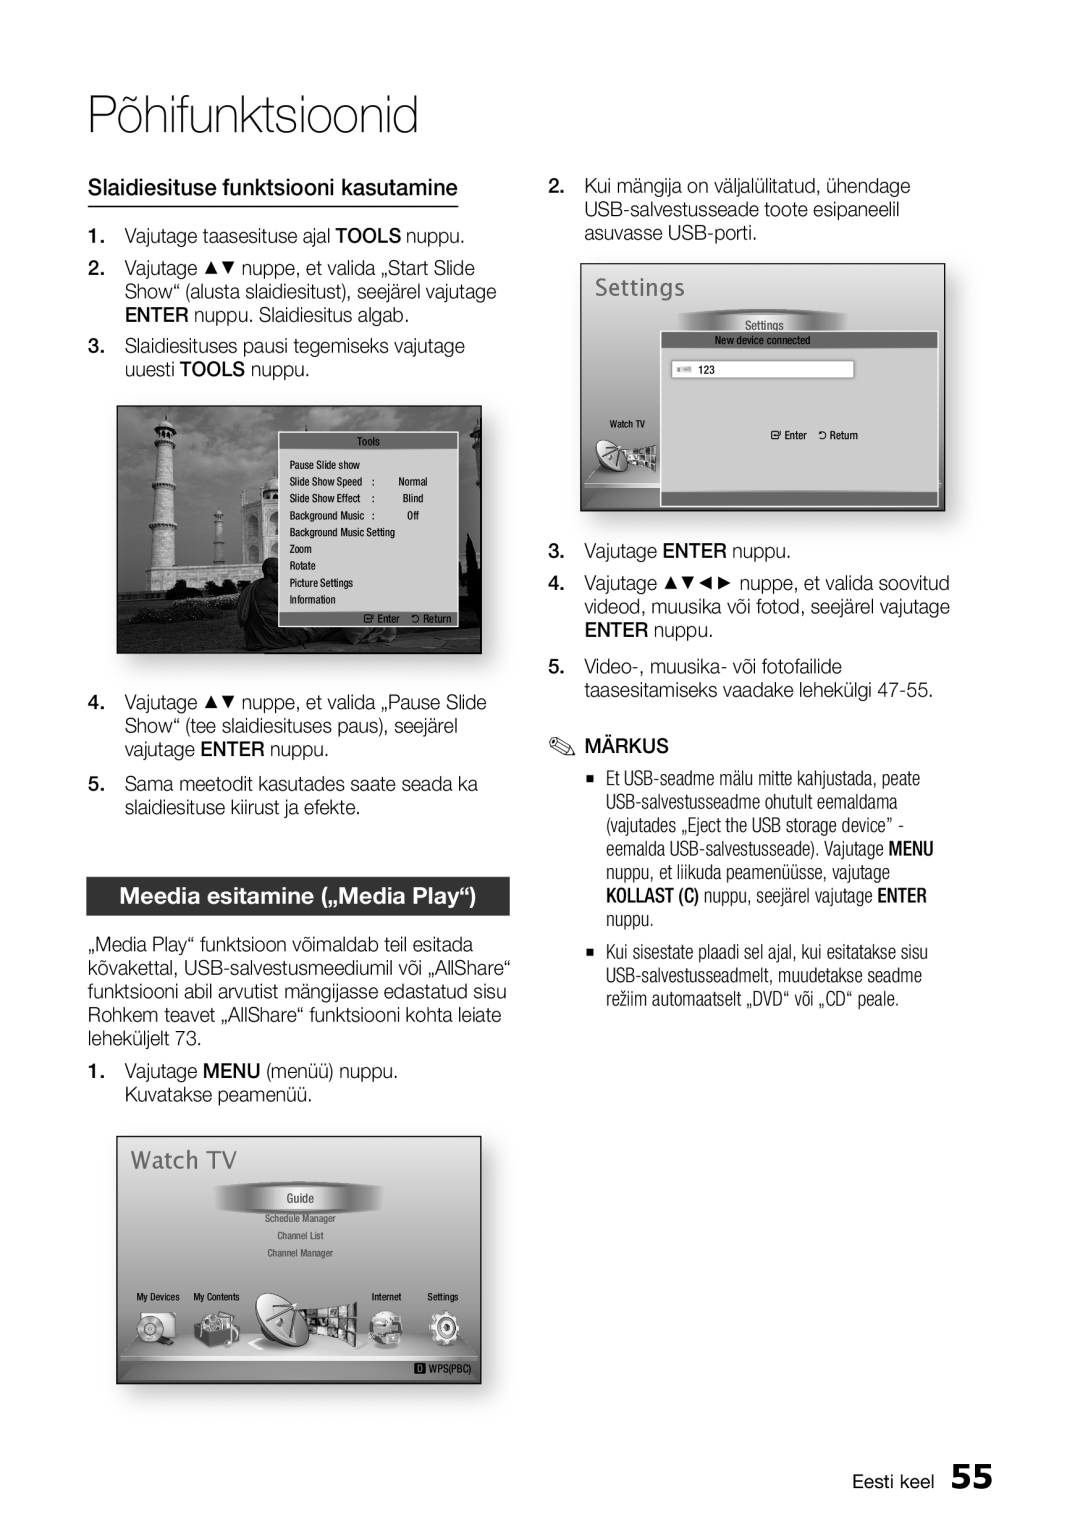 Samsung BD-E6300/EN manual Watch TV, Settings, Slaidiesituse funktsiooni kasutamine, Meedia esitamine „Media Play“ 